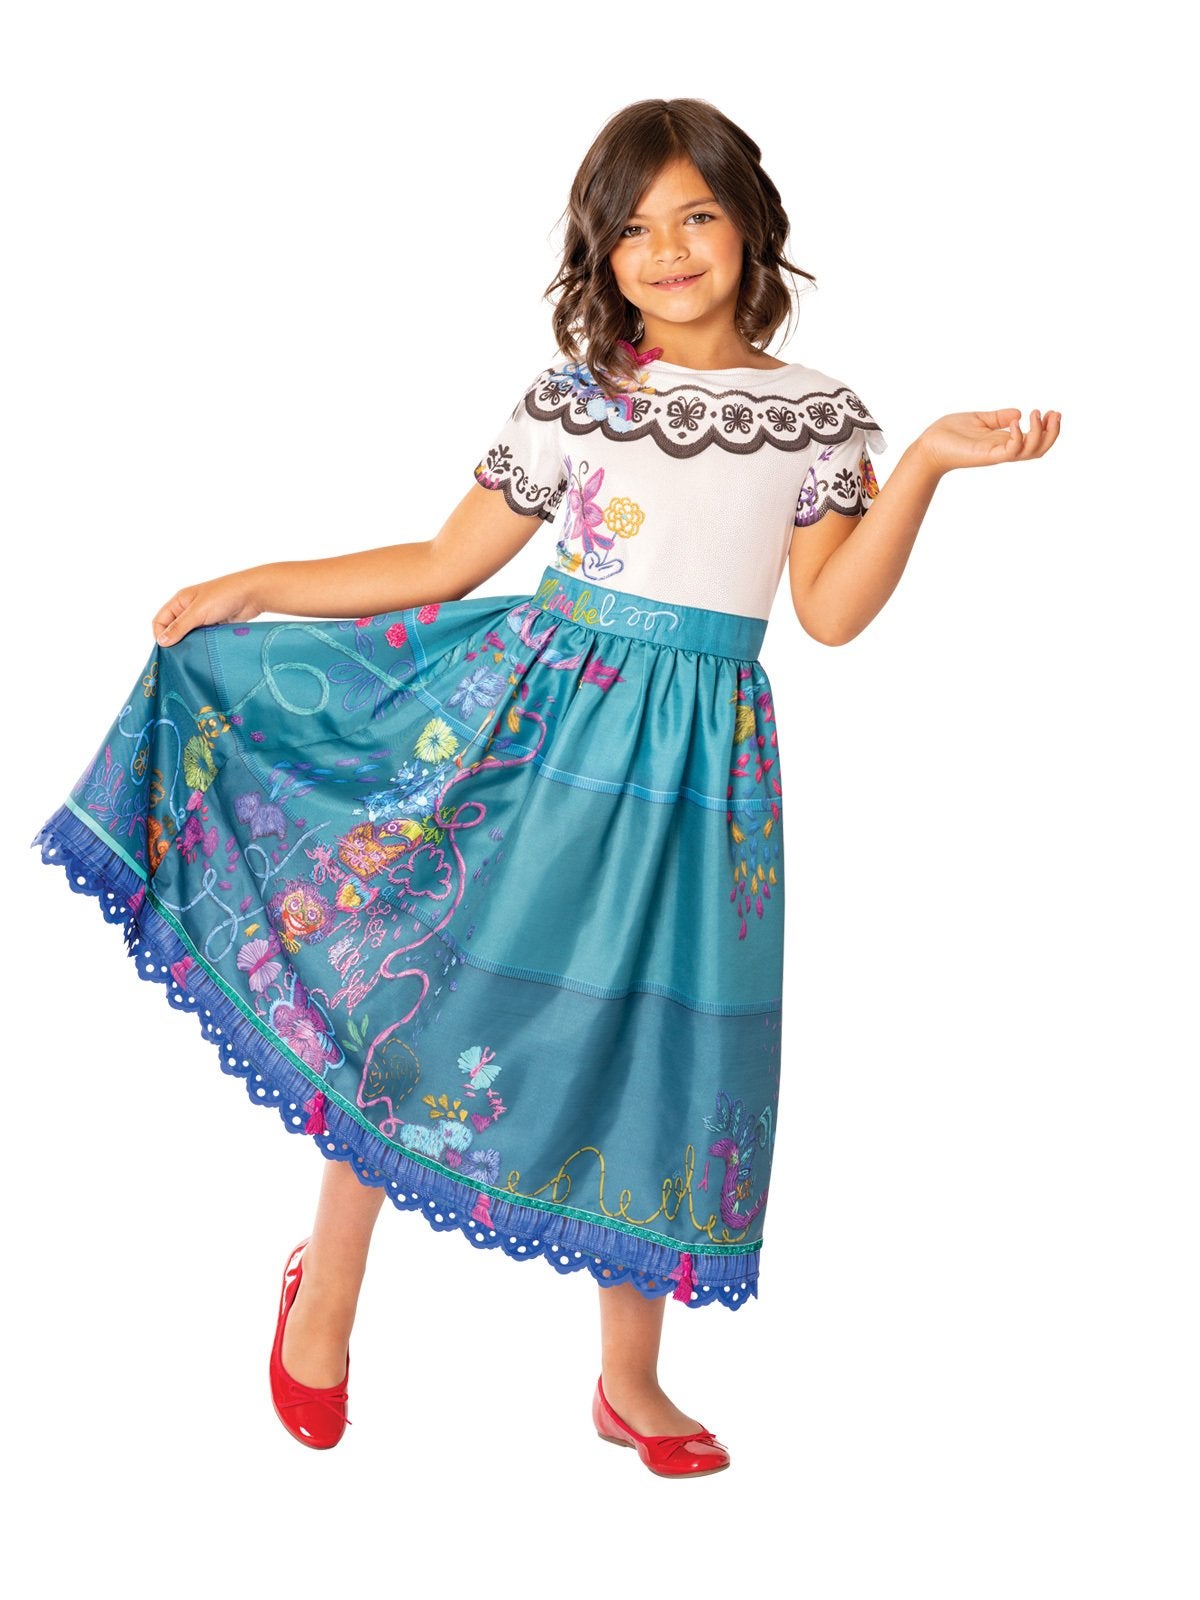 Mirabel Deluxe Costume for Kids - Disney Encanto